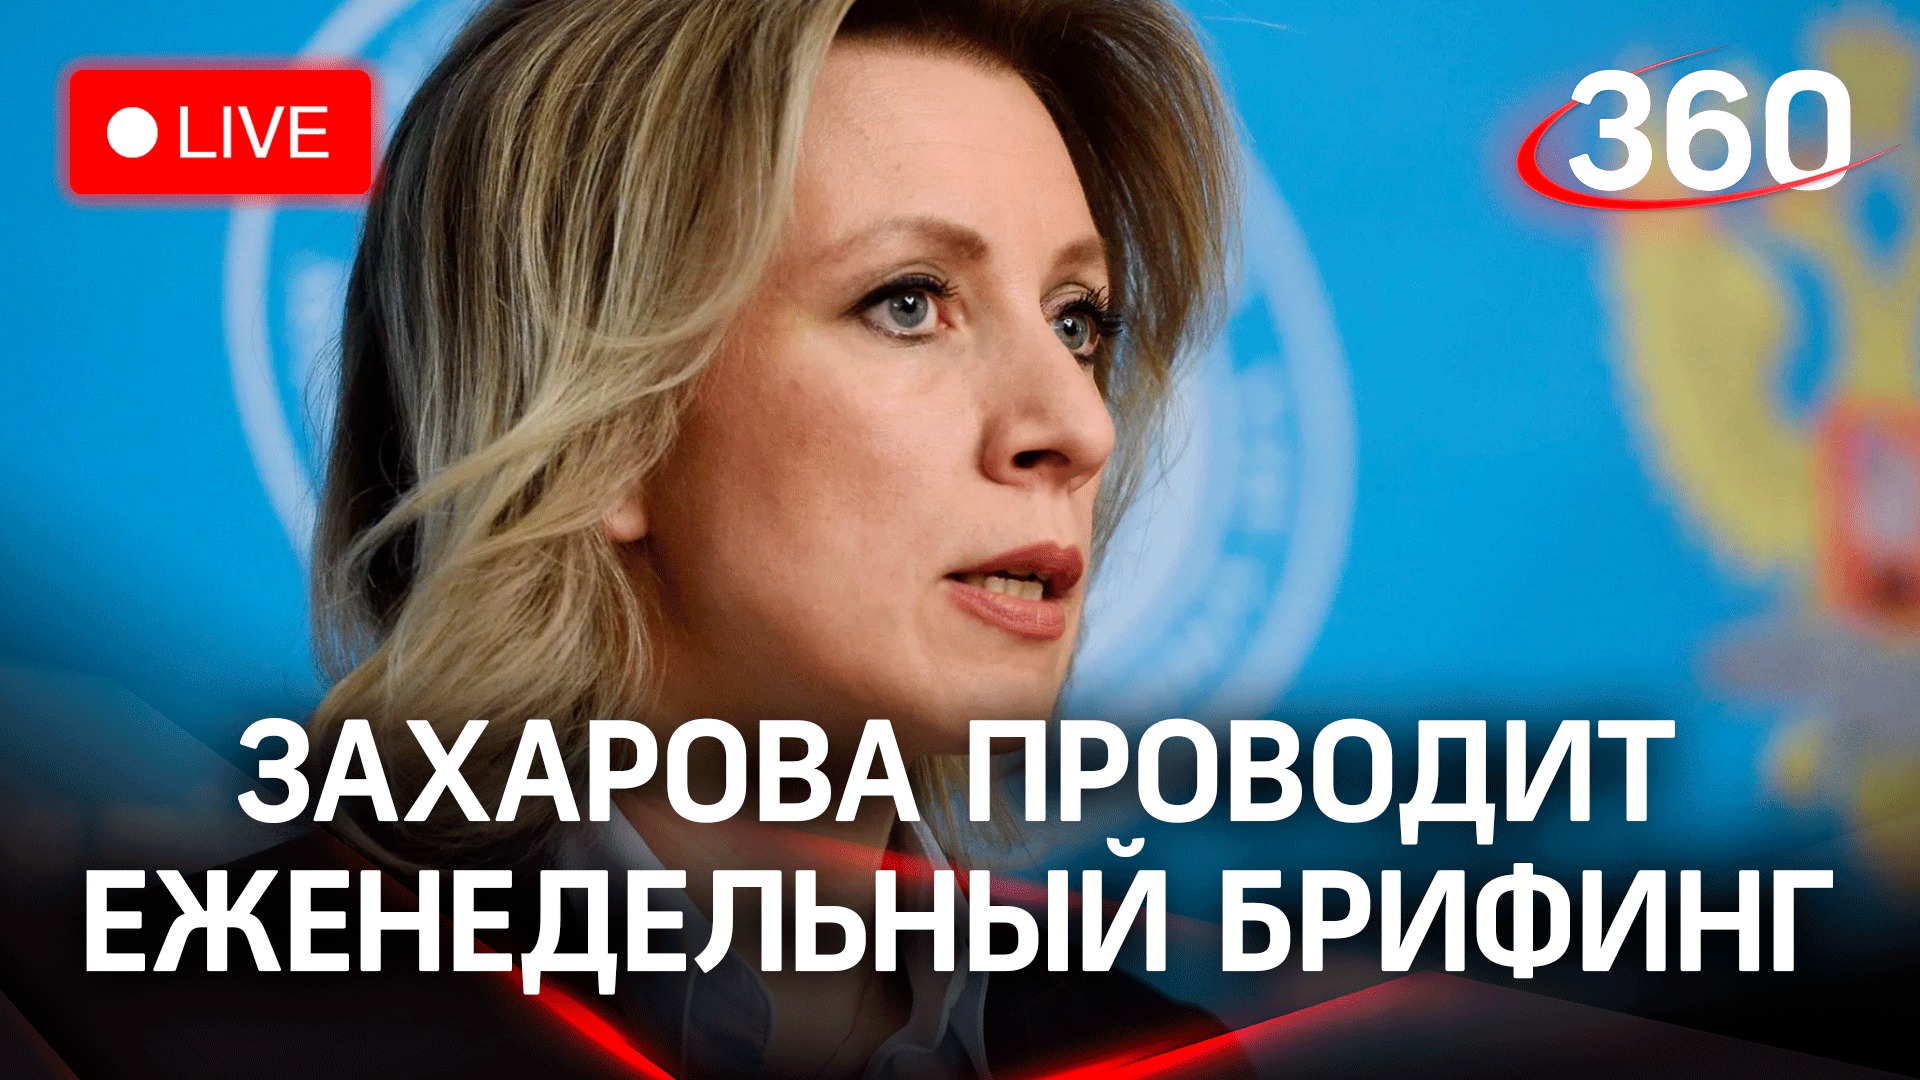 Официальный представитель МИД России Захарова проводит еженедельный брифинг